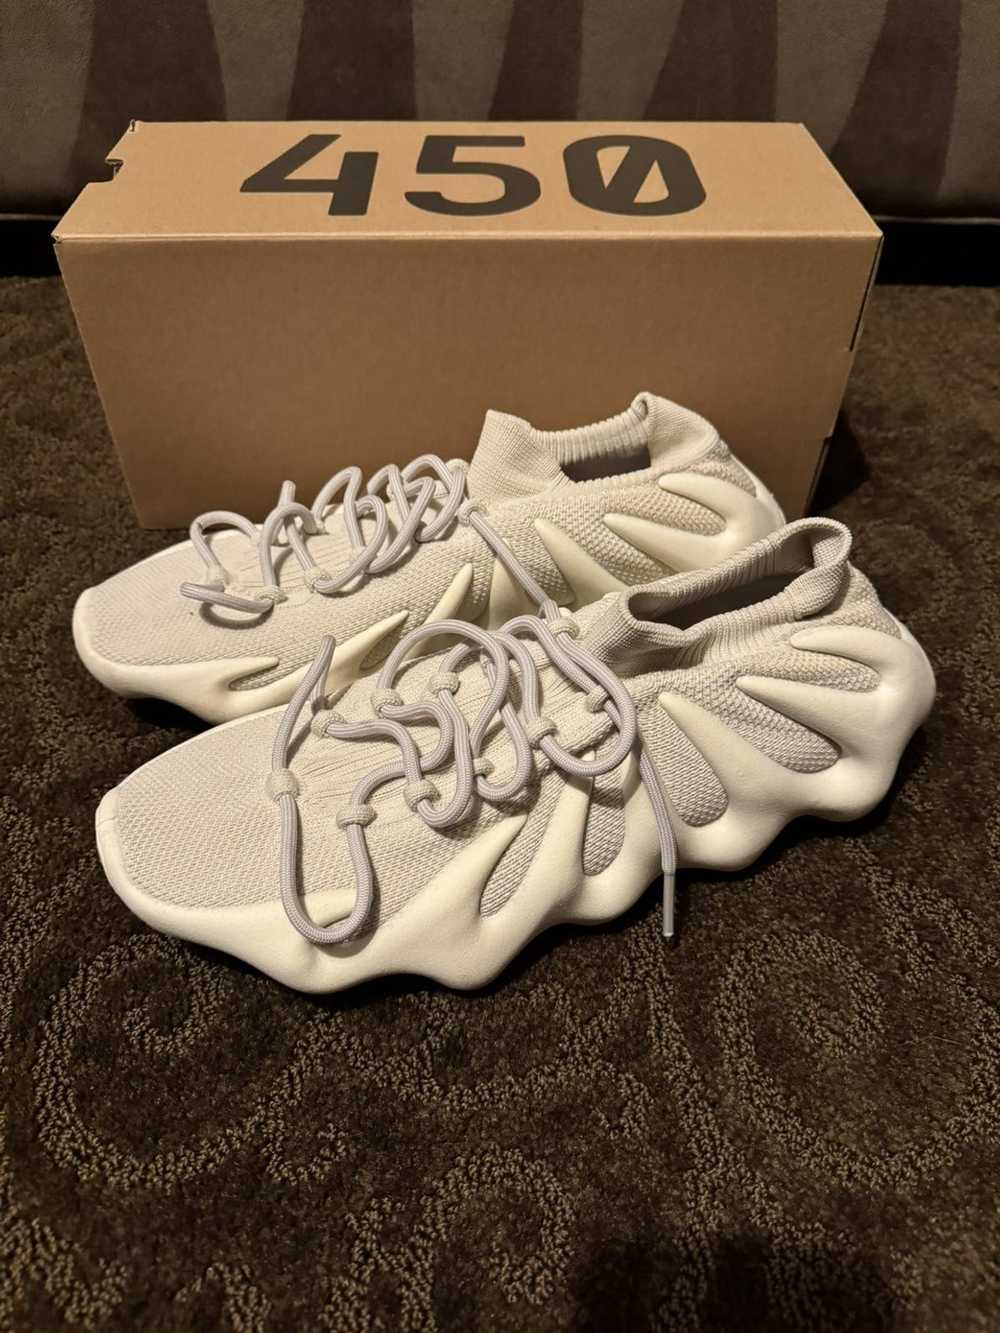 Adidas × Kanye West Yeezy 450 Cloud White 12.5 - image 1